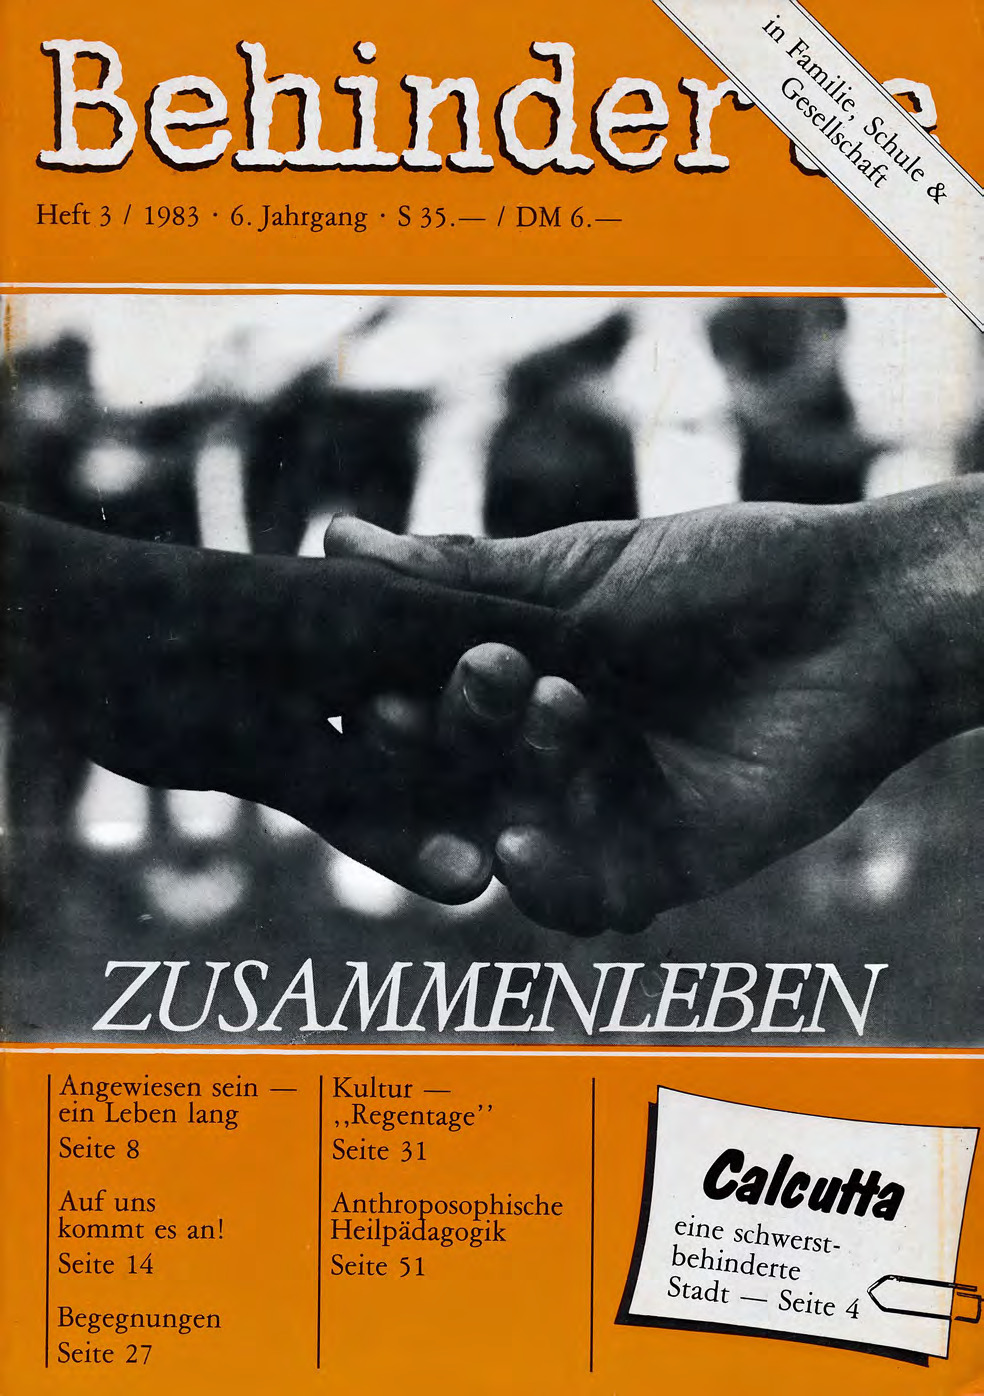 Titelbild der Zeitschrift BEHINDERTE MENSCHEN, Ausgabe 3/1983 "Zusammenleben"